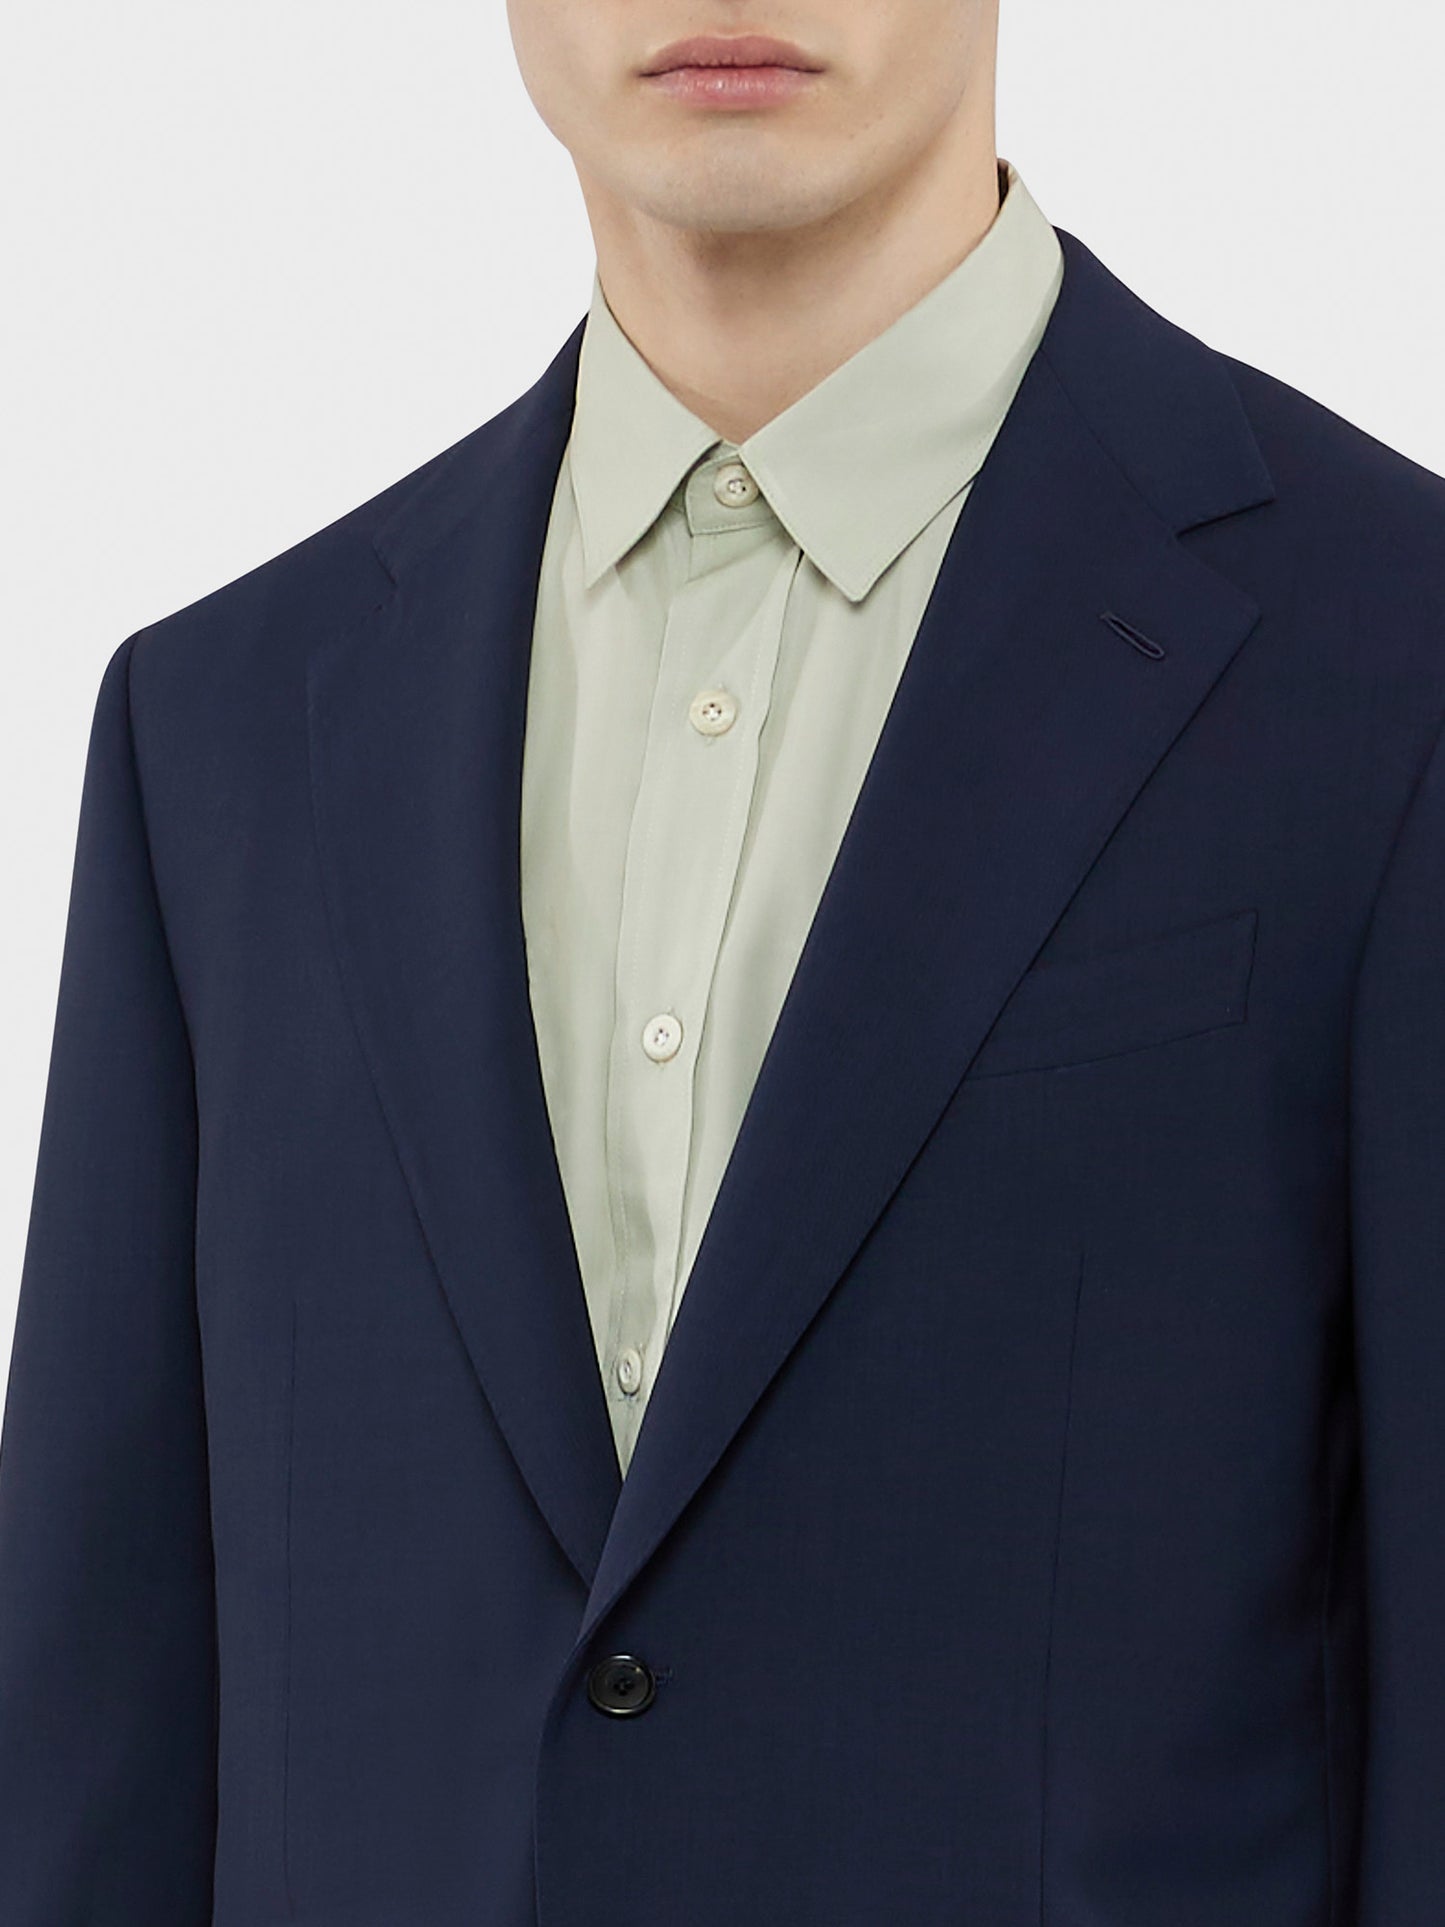 Caruso Menswear Abbigliamento Uomo Abito Norma in tropical di lana blu "Houdini" drop 7R dettaglio giacca